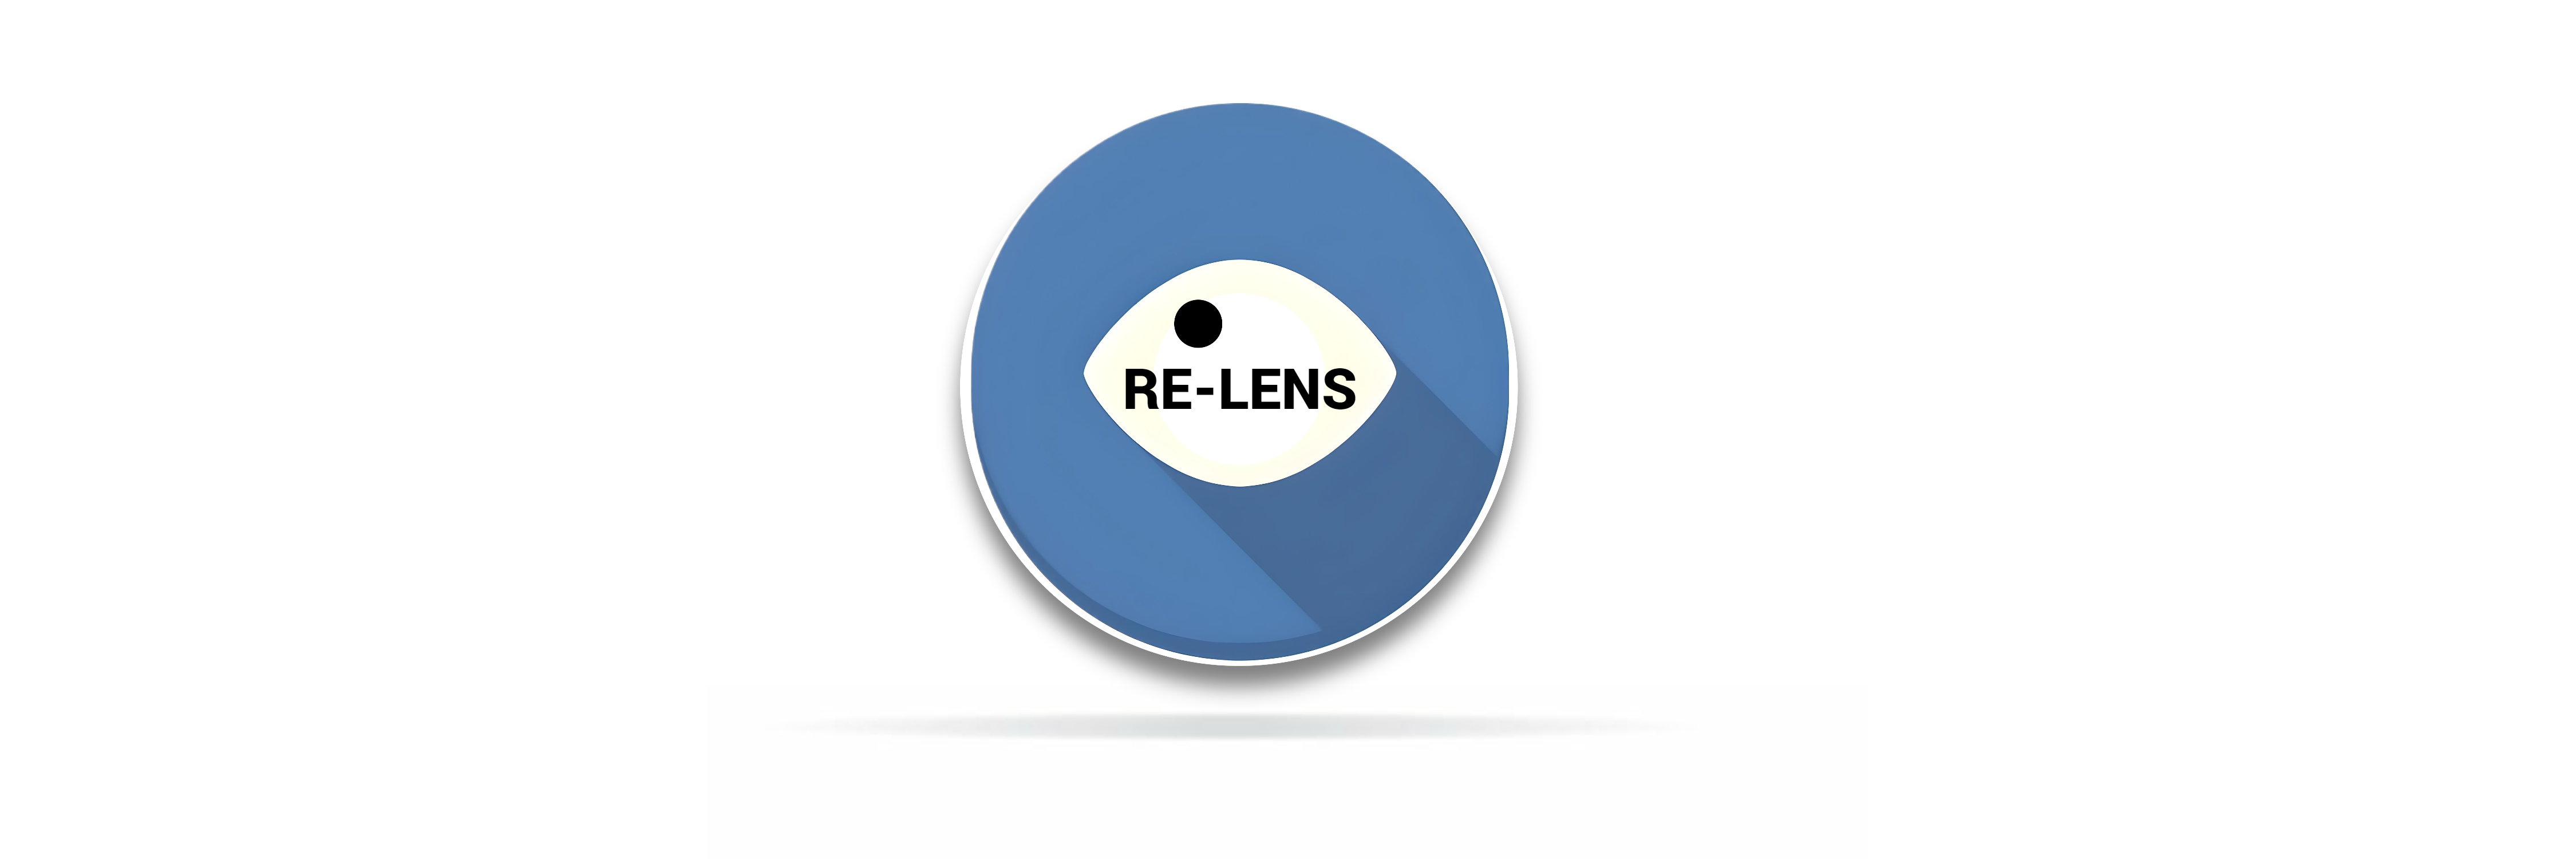 Re-lens Frames